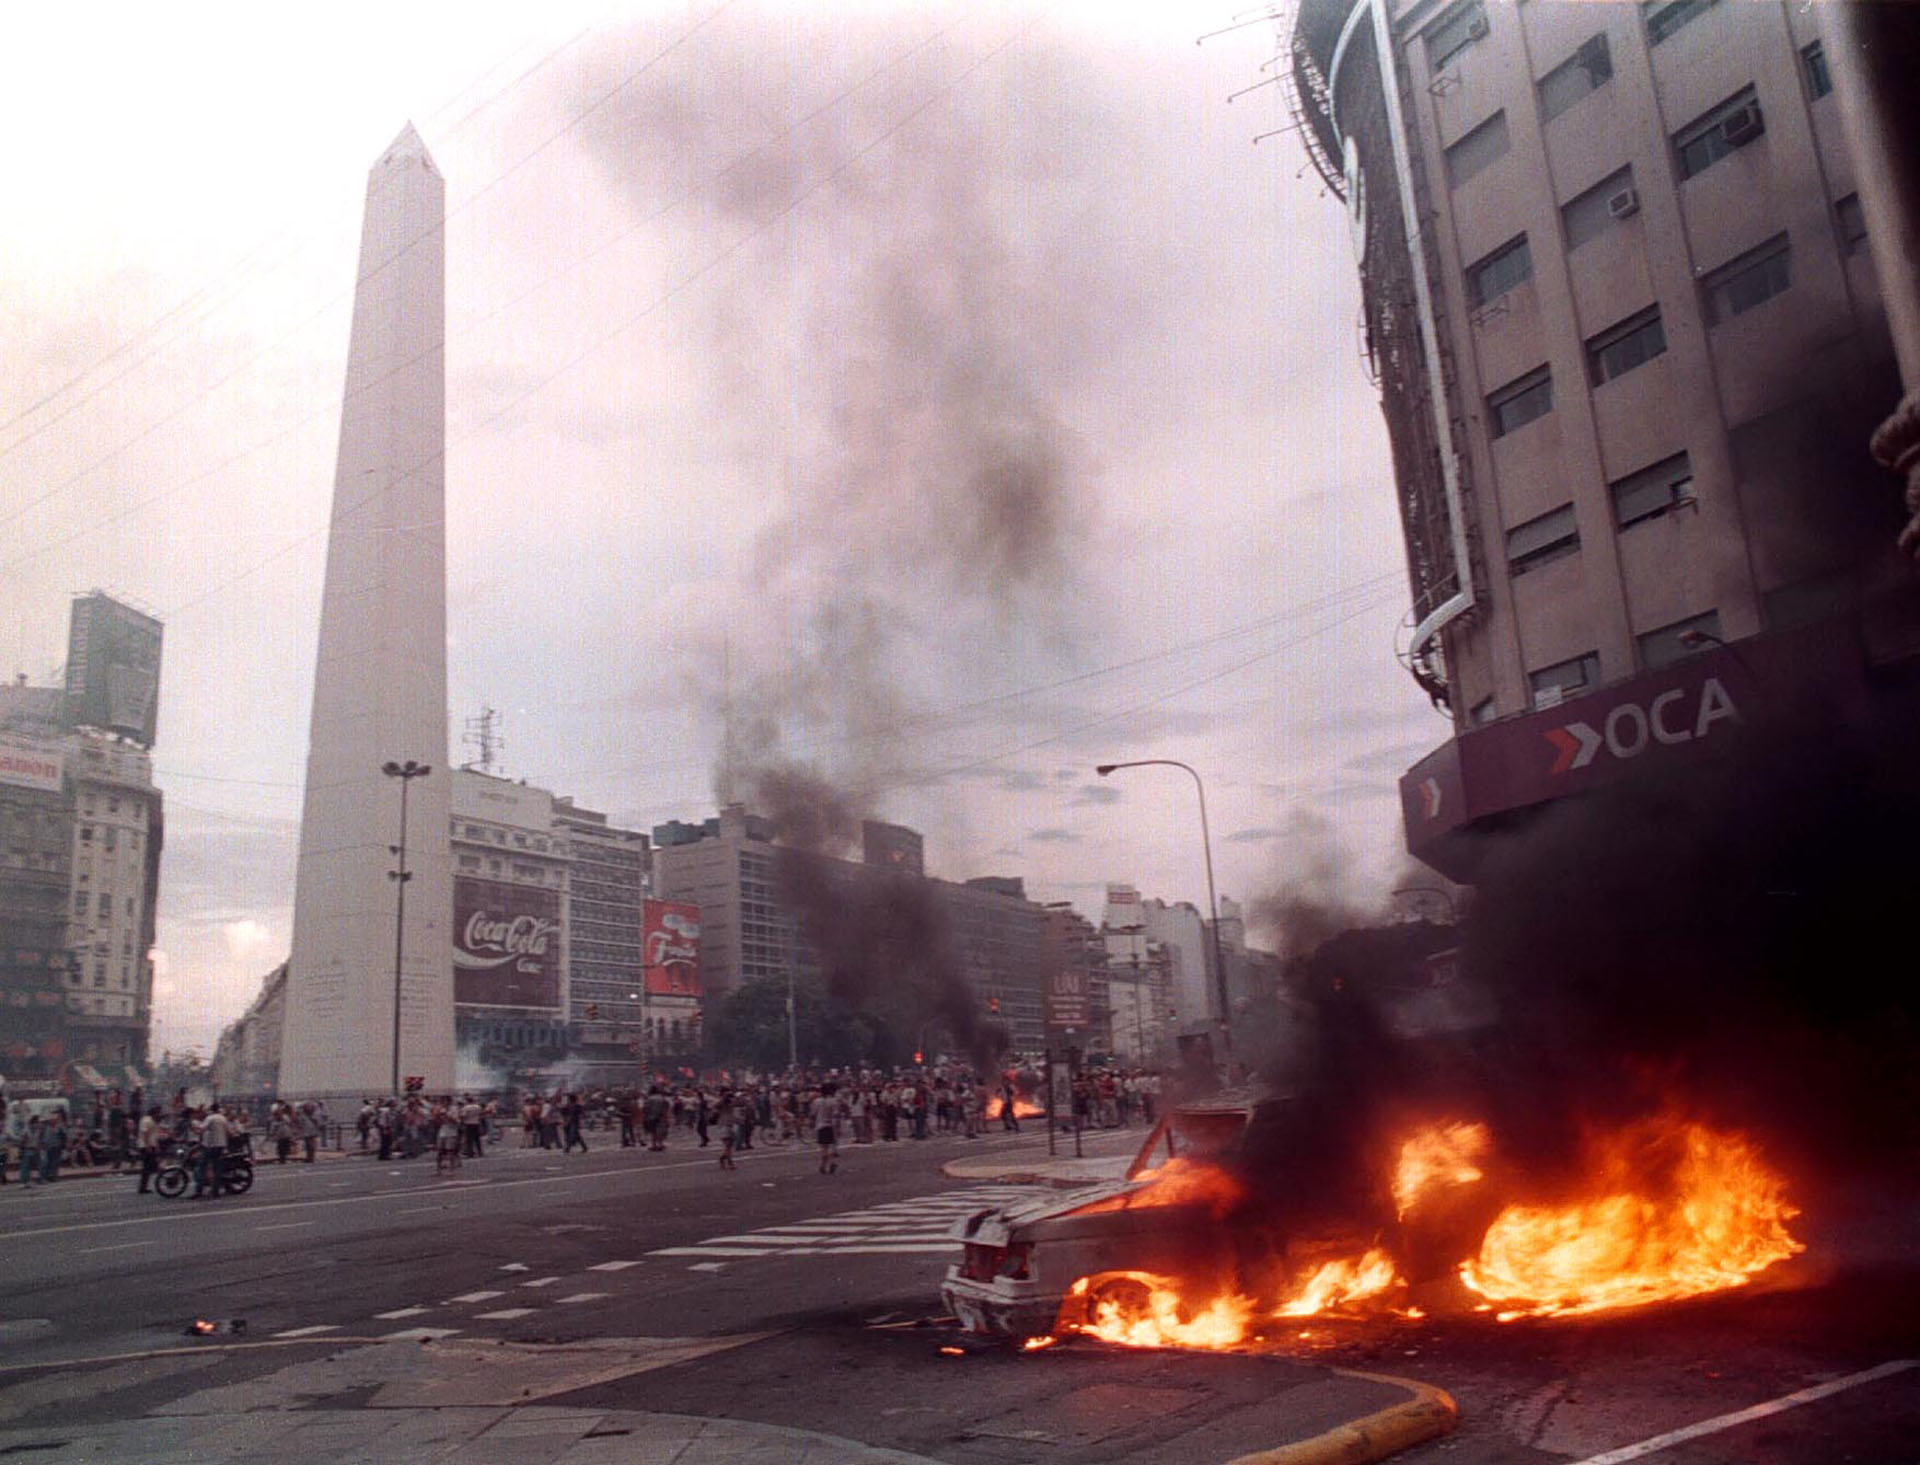 Conocidos como "Cacerolazo" o "Argentinazo", los disturbios de diciembre de 2001 son la crisis social, política y económica más importante de las últimas décadas en Argentina.